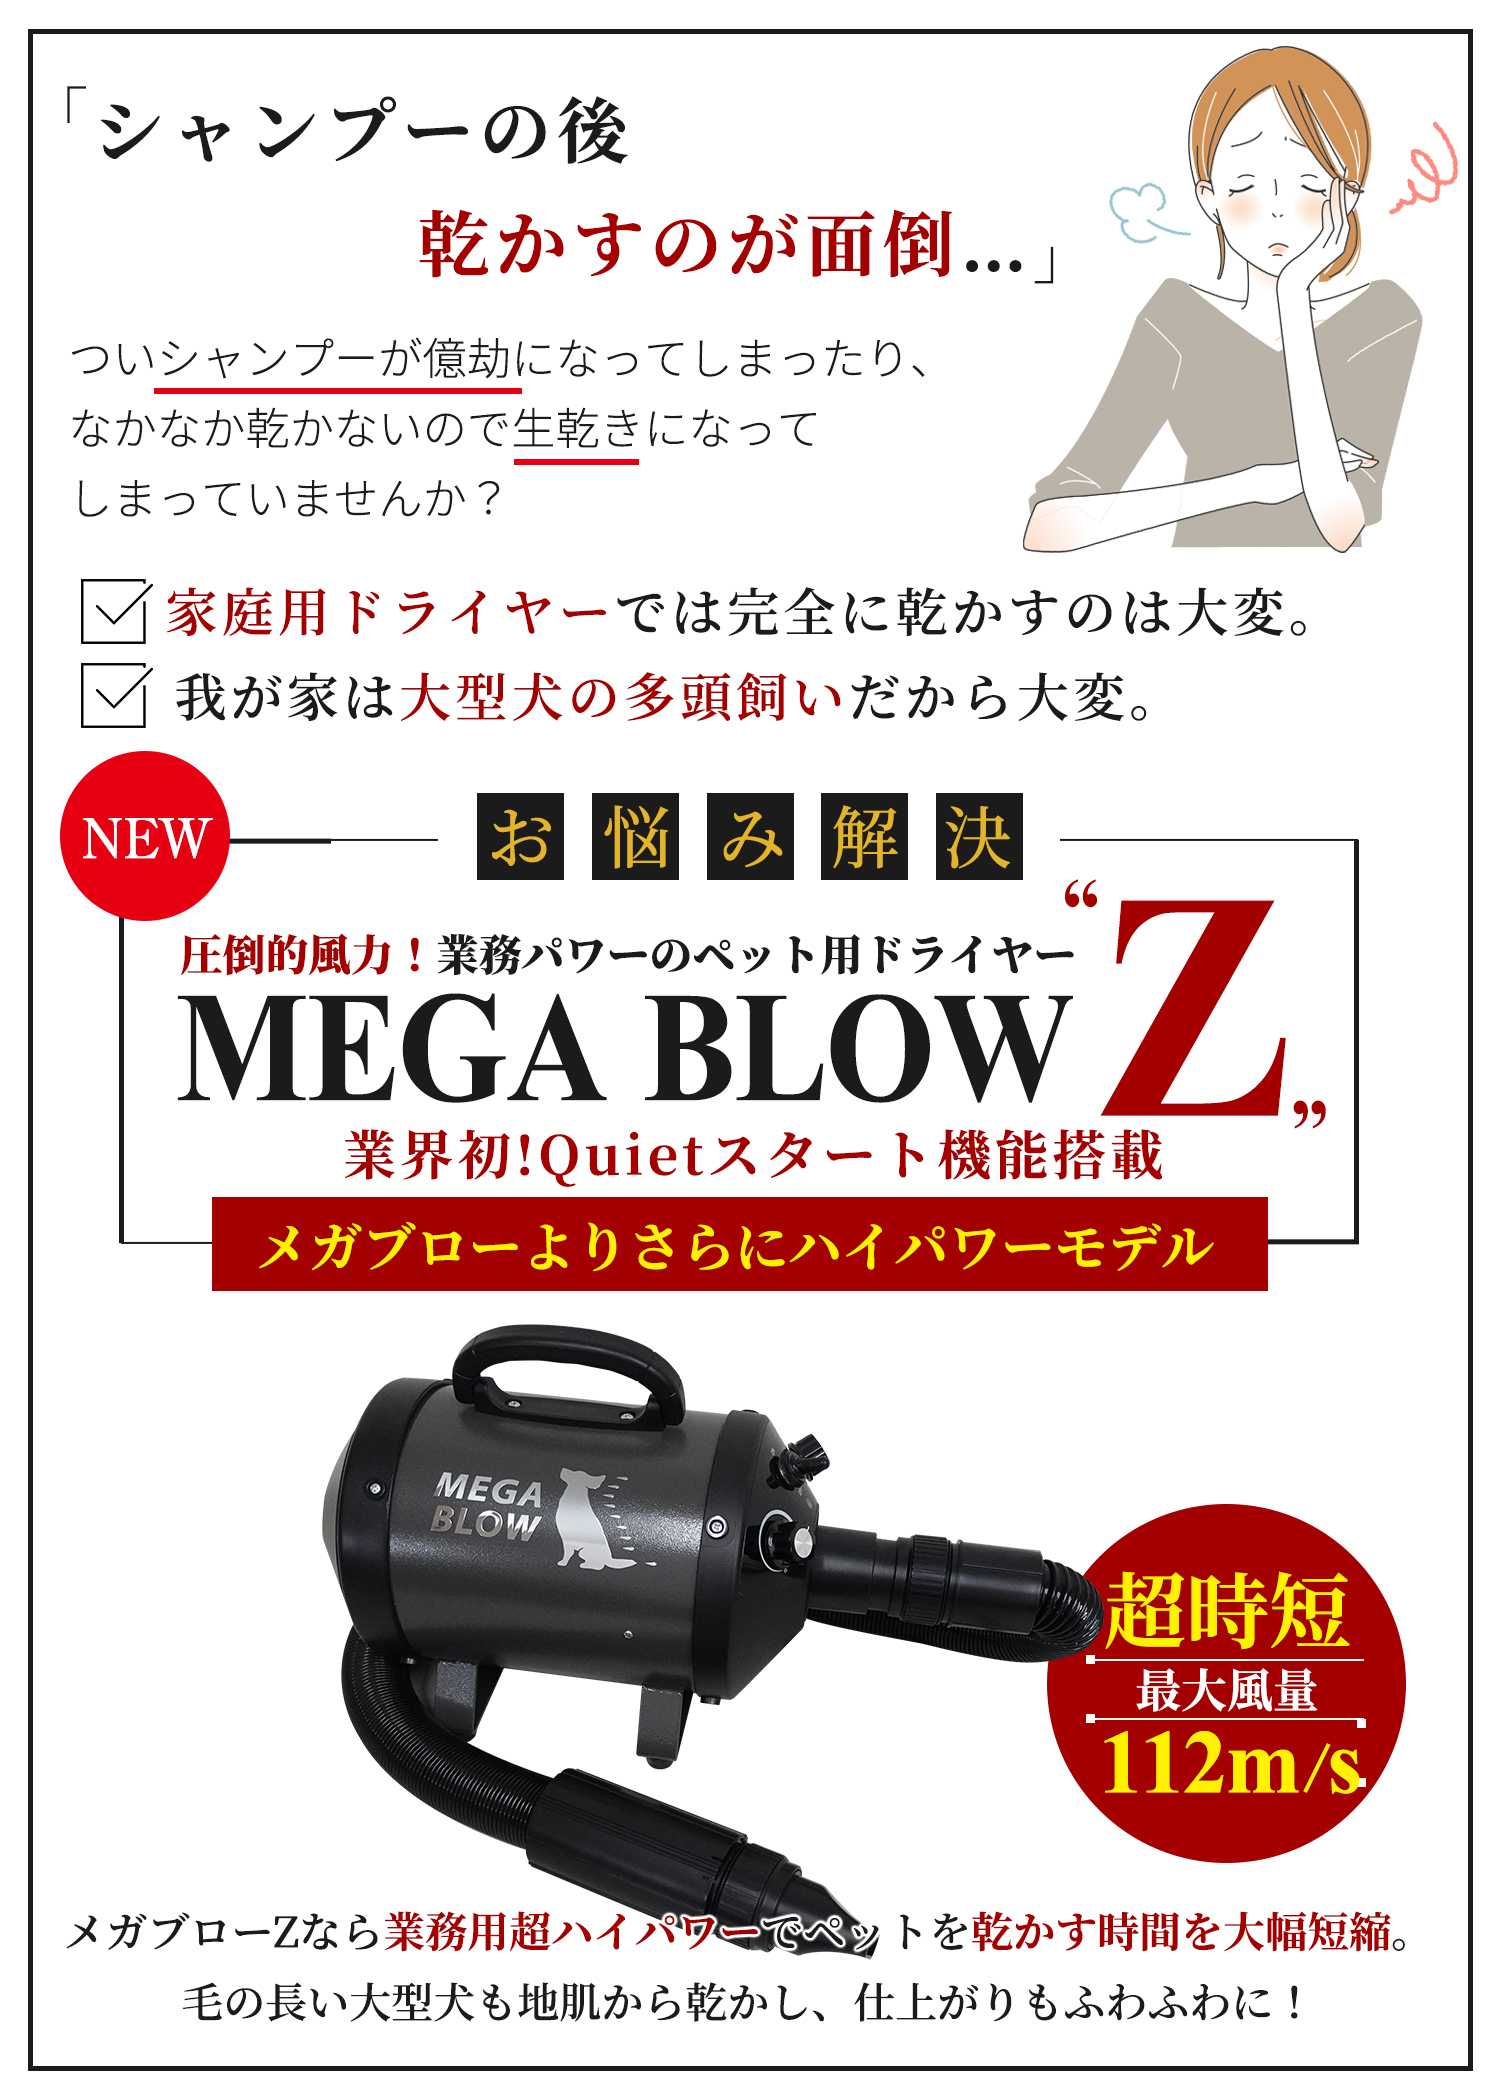 Megablow Z – MEGA BLOW